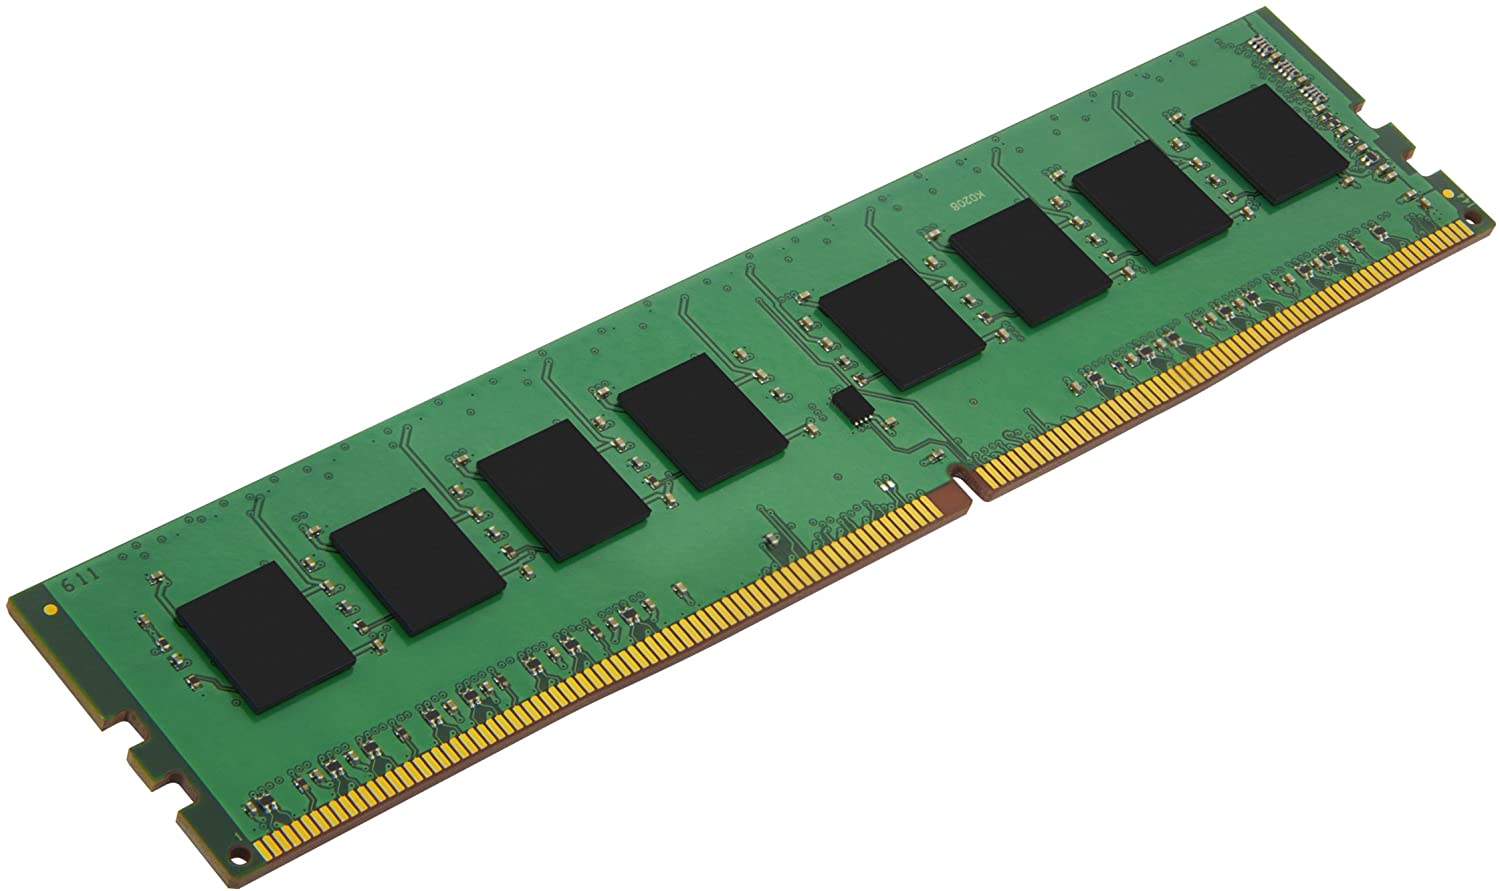 DIMM DDR4 2666 Mhz 8Gb KINGSTON Pc4 21300, Sin bufer, Nuevo, Sellado, garantia 1 año